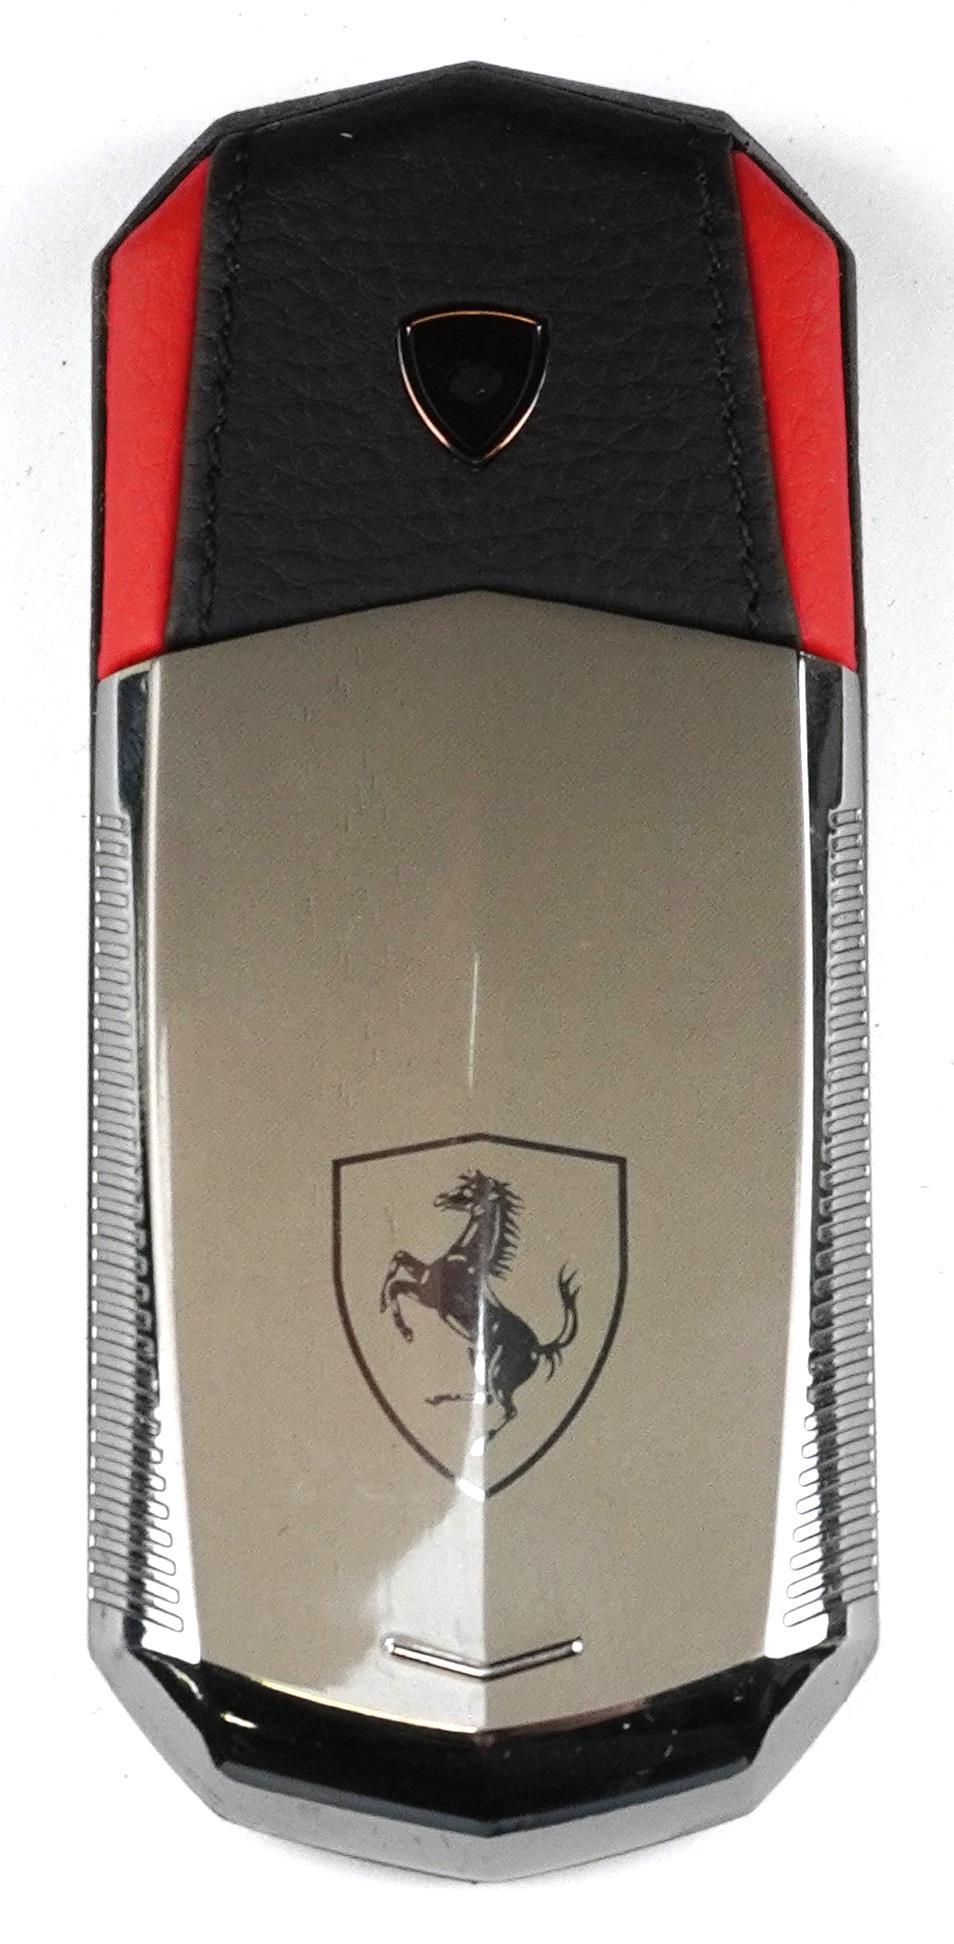 Cased Vertu Ferrari mobile phone and accessories - Image 5 of 6